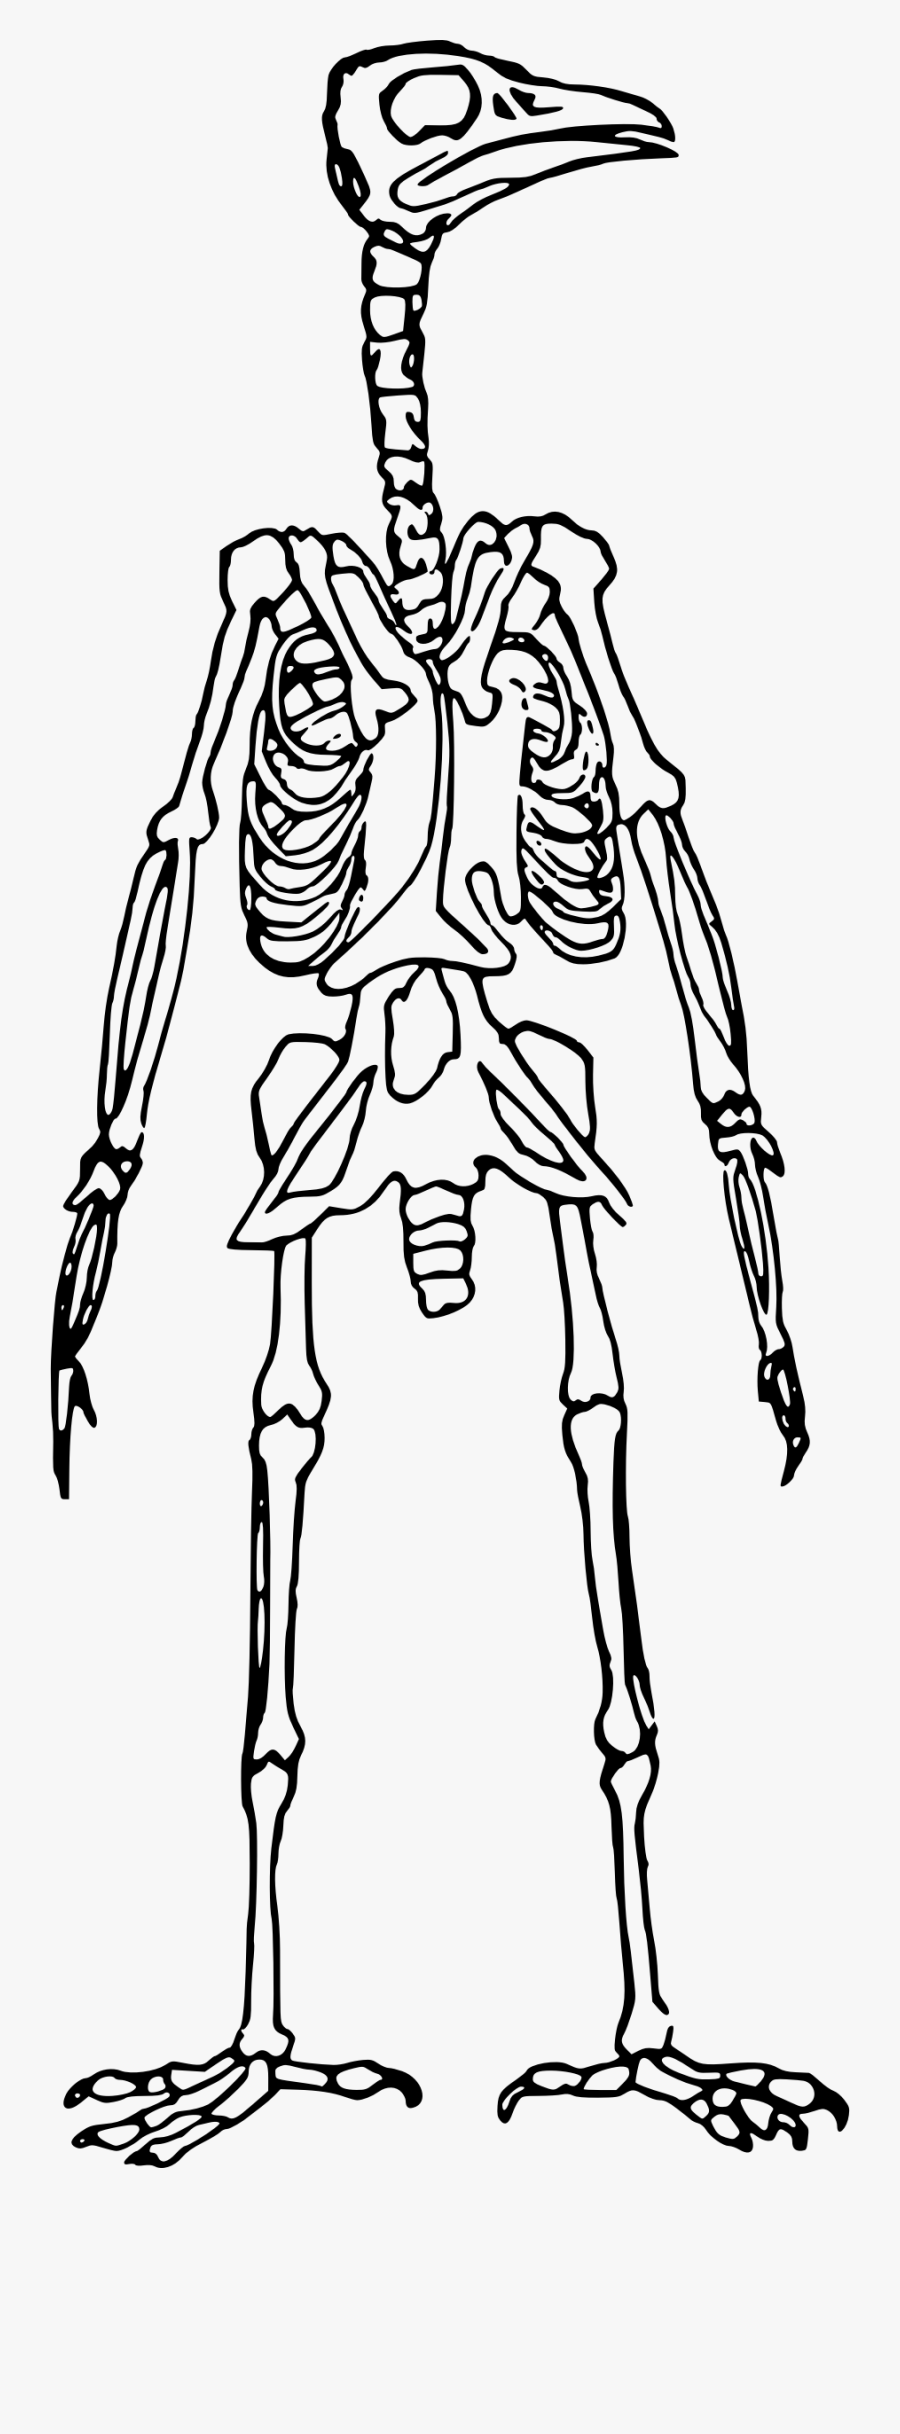 Skeleton Standing Big Image - Bird Skeleton Clip Art, Transparent Clipart